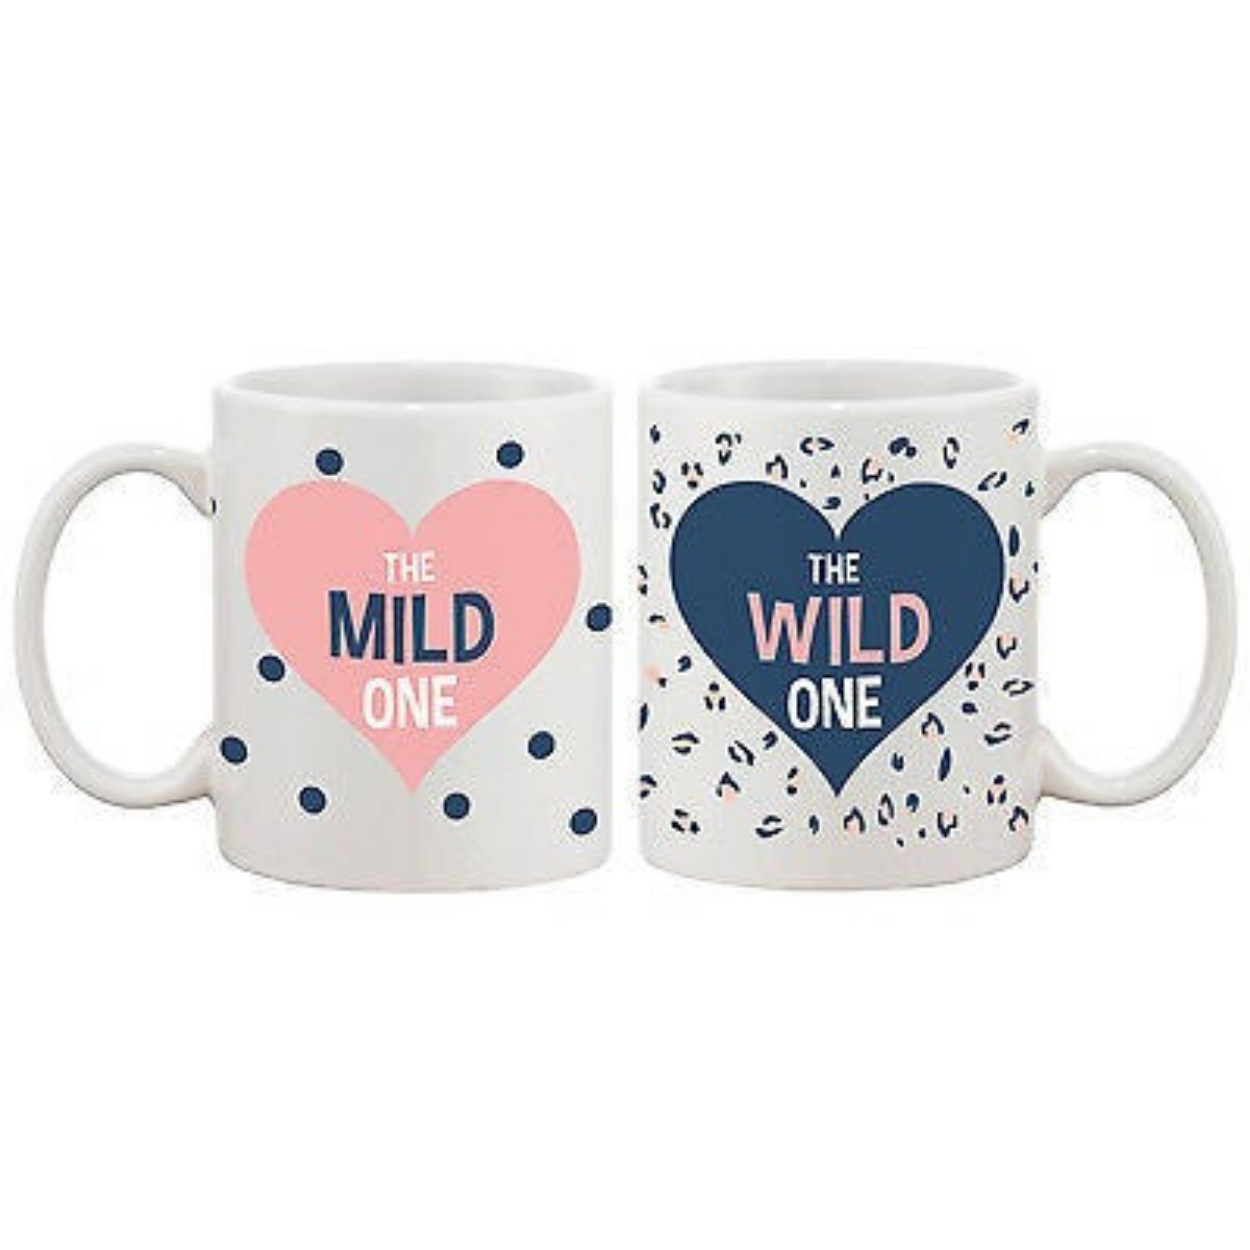 Polka Dot and Leopard Print BFF Mug- Mild and Wild One Best Friend Mug Cup White